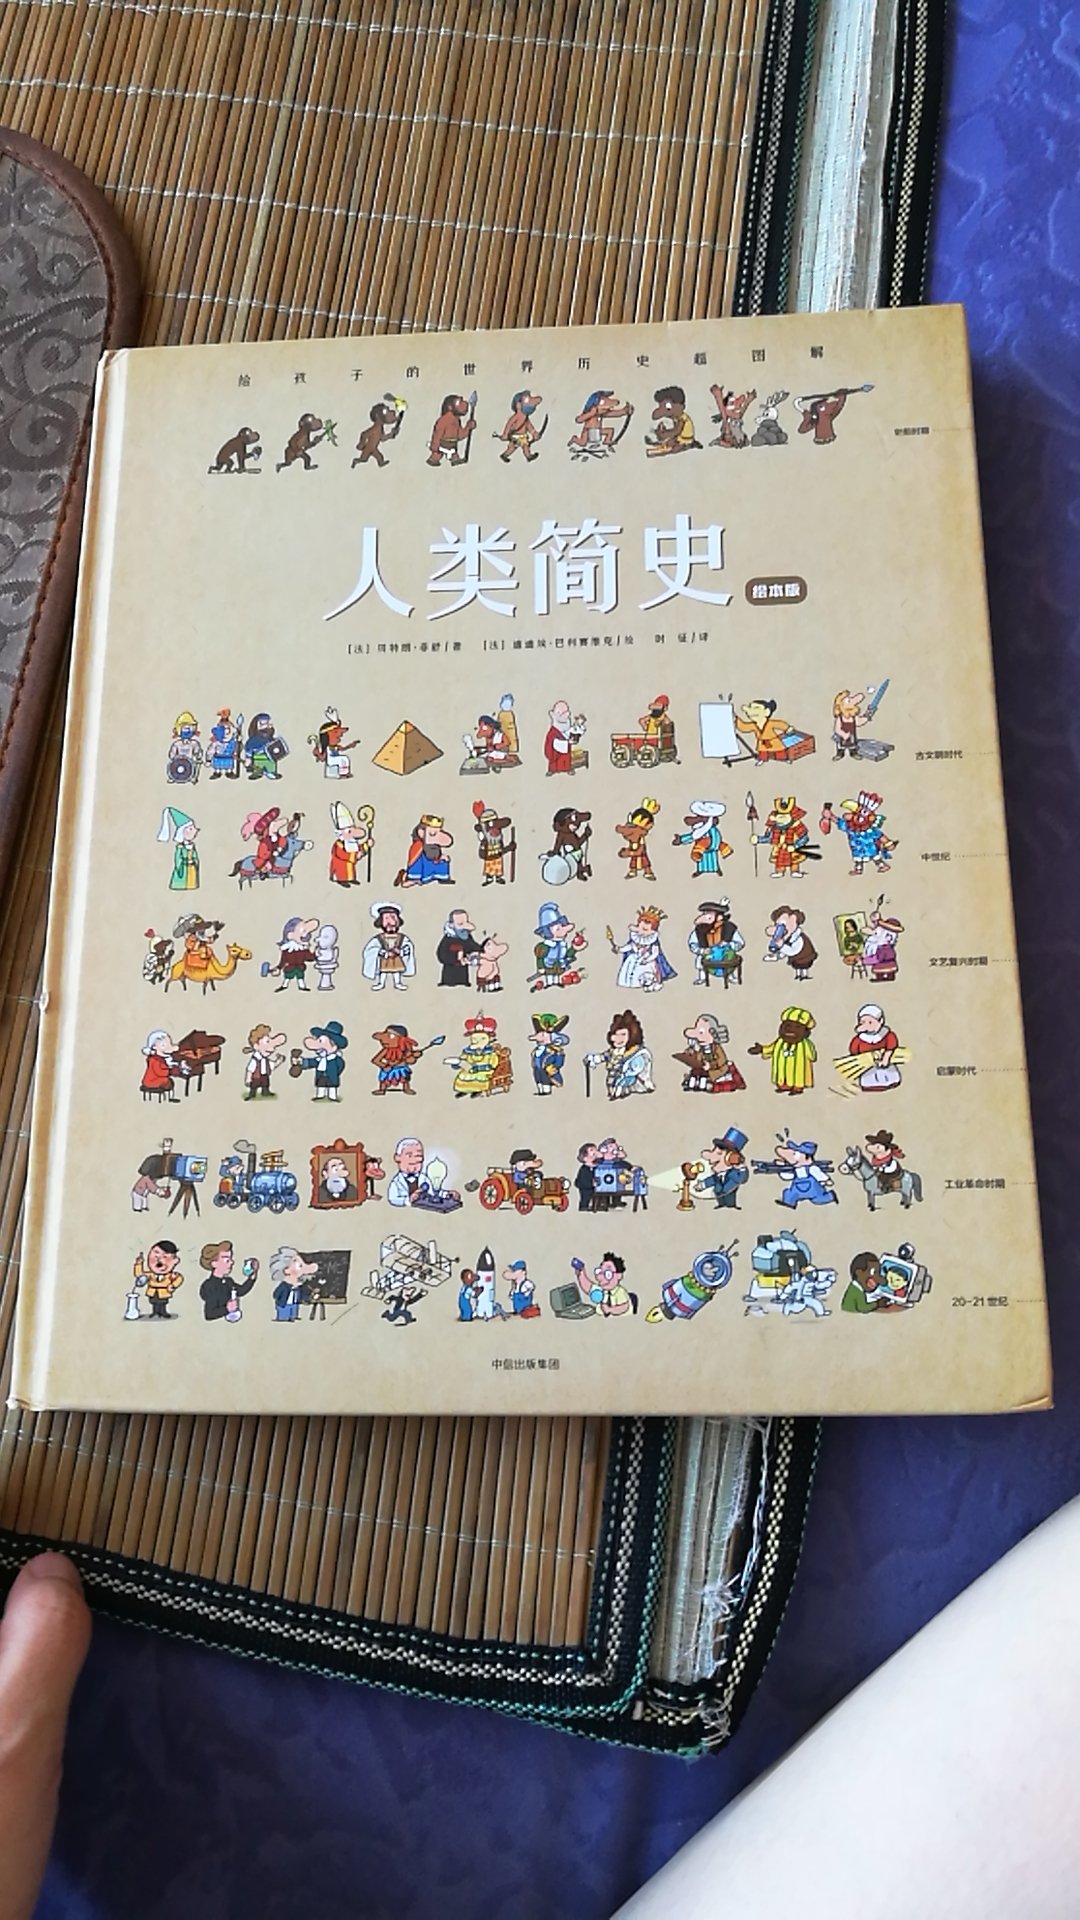 图文并茂，特别适合五岁小朋友阅读，孩子很喜欢，也了解了很多古代人类的生活方式和世界各国的变迁